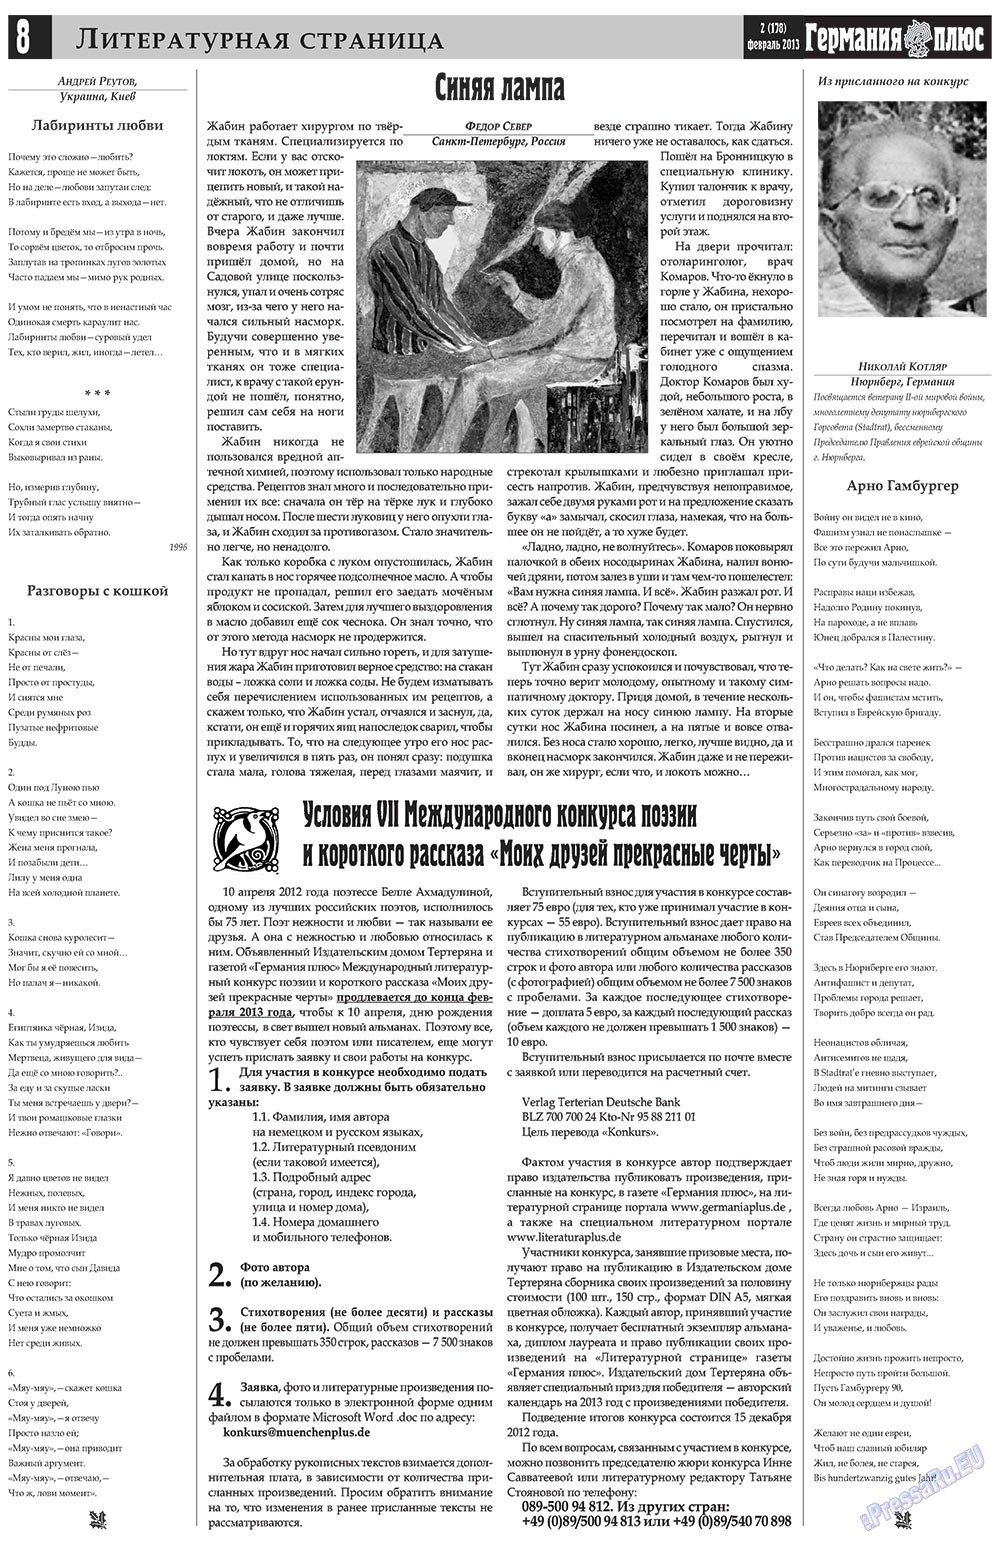 Германия плюс (газета). 2013 год, номер 2, стр. 8